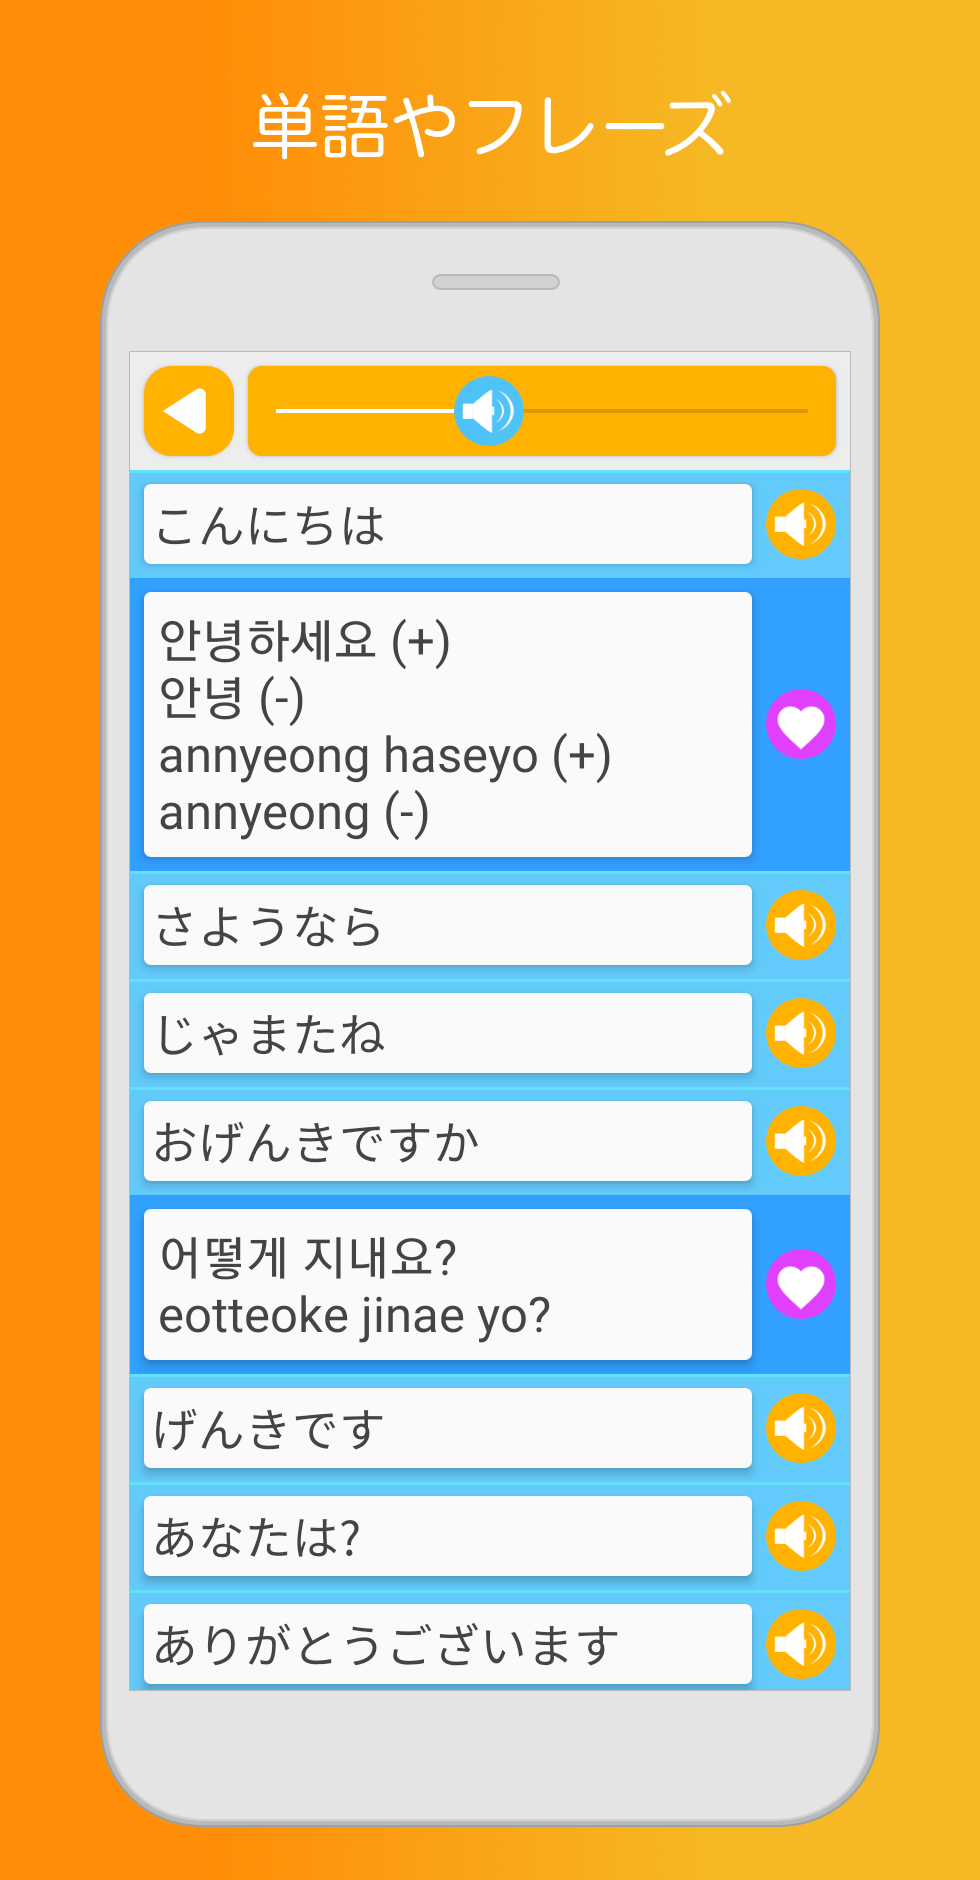 無料で 韓国語学習と勉強 ゲームで単語を学ぶ アプリの最新版 Apk3 4 0をダウンロードー Android用 韓国語学習と勉強 ゲームで単語を学ぶ Apk の最新バージョンをダウンロード Apkfab Com Jp